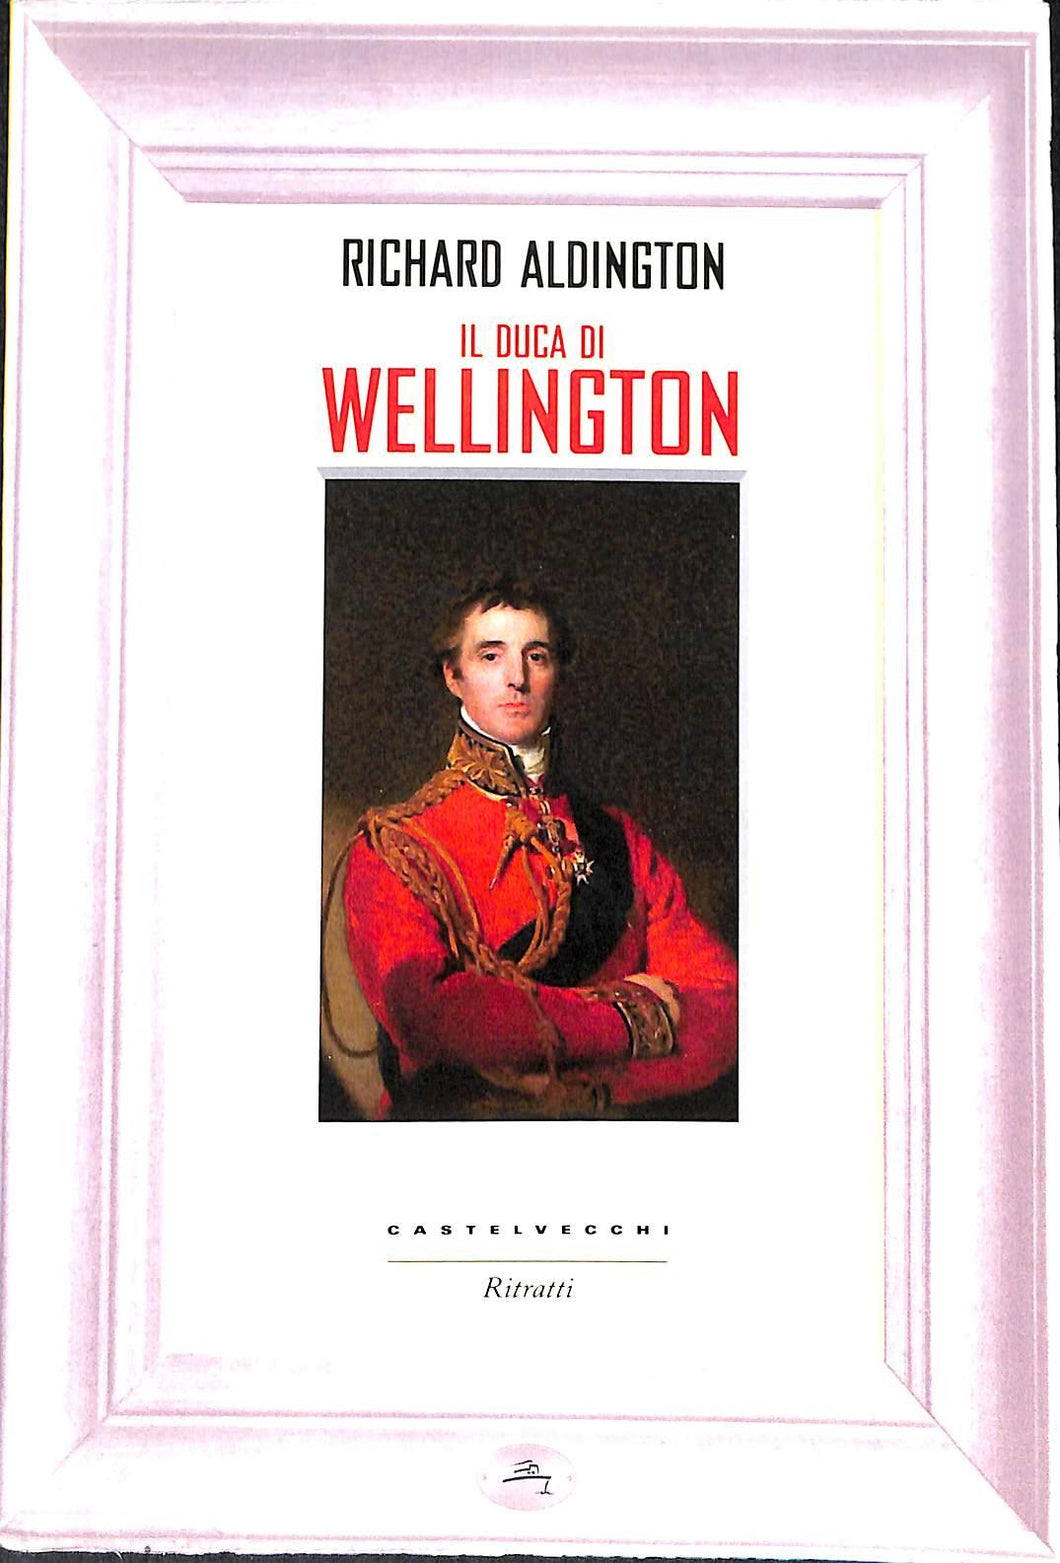 Il duca di Wellington
/ Richard Aldington